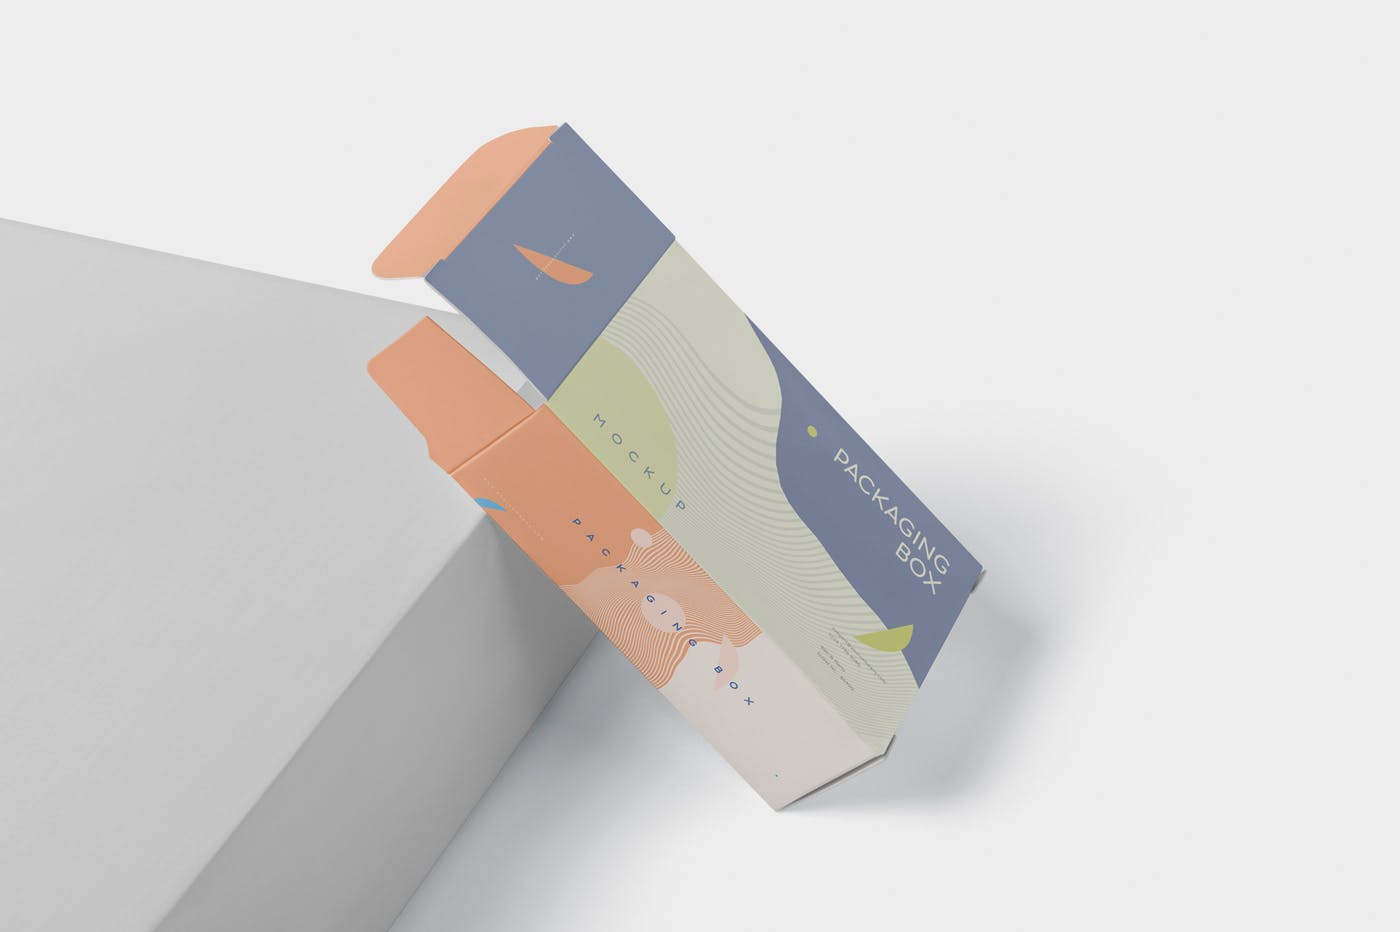 扁平矩形产品包装盒效果图普贤居精选 Package Box Mockup – Slim Rectangle Shape插图(2)